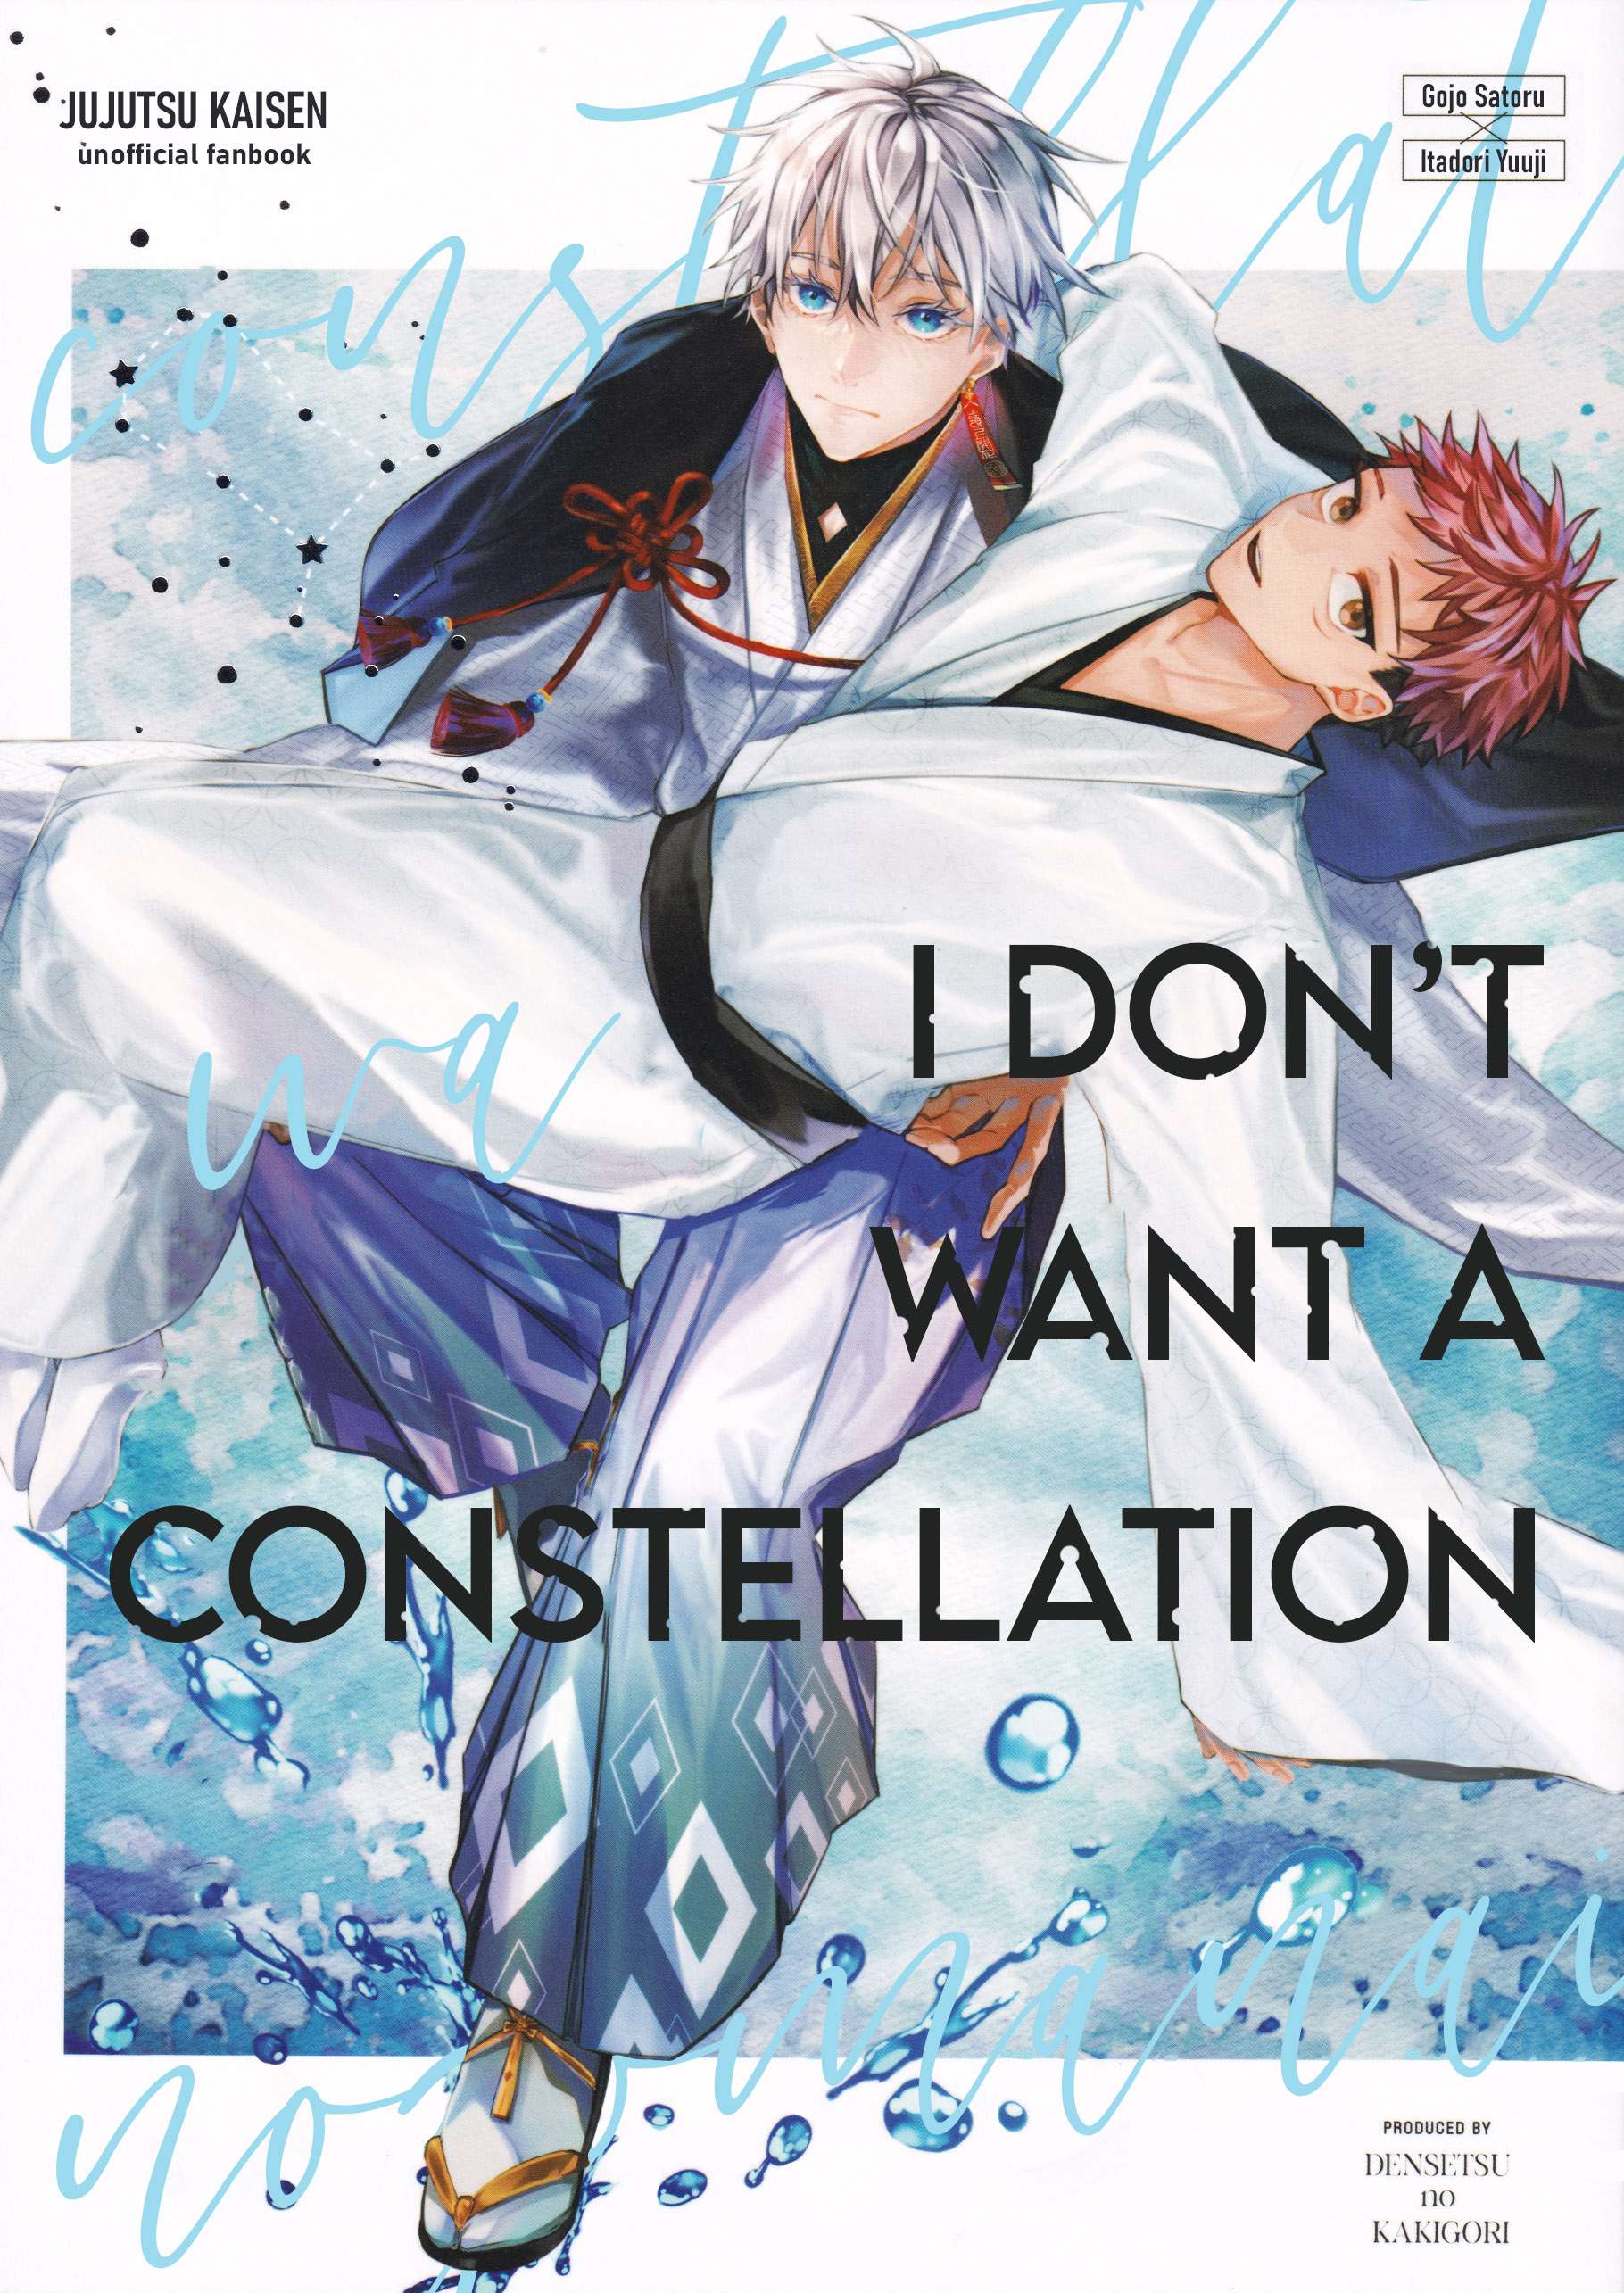 Jujutsu Kaisen - Constellation wa Nozomanai (Doujinshi) - chapter 1 - #1